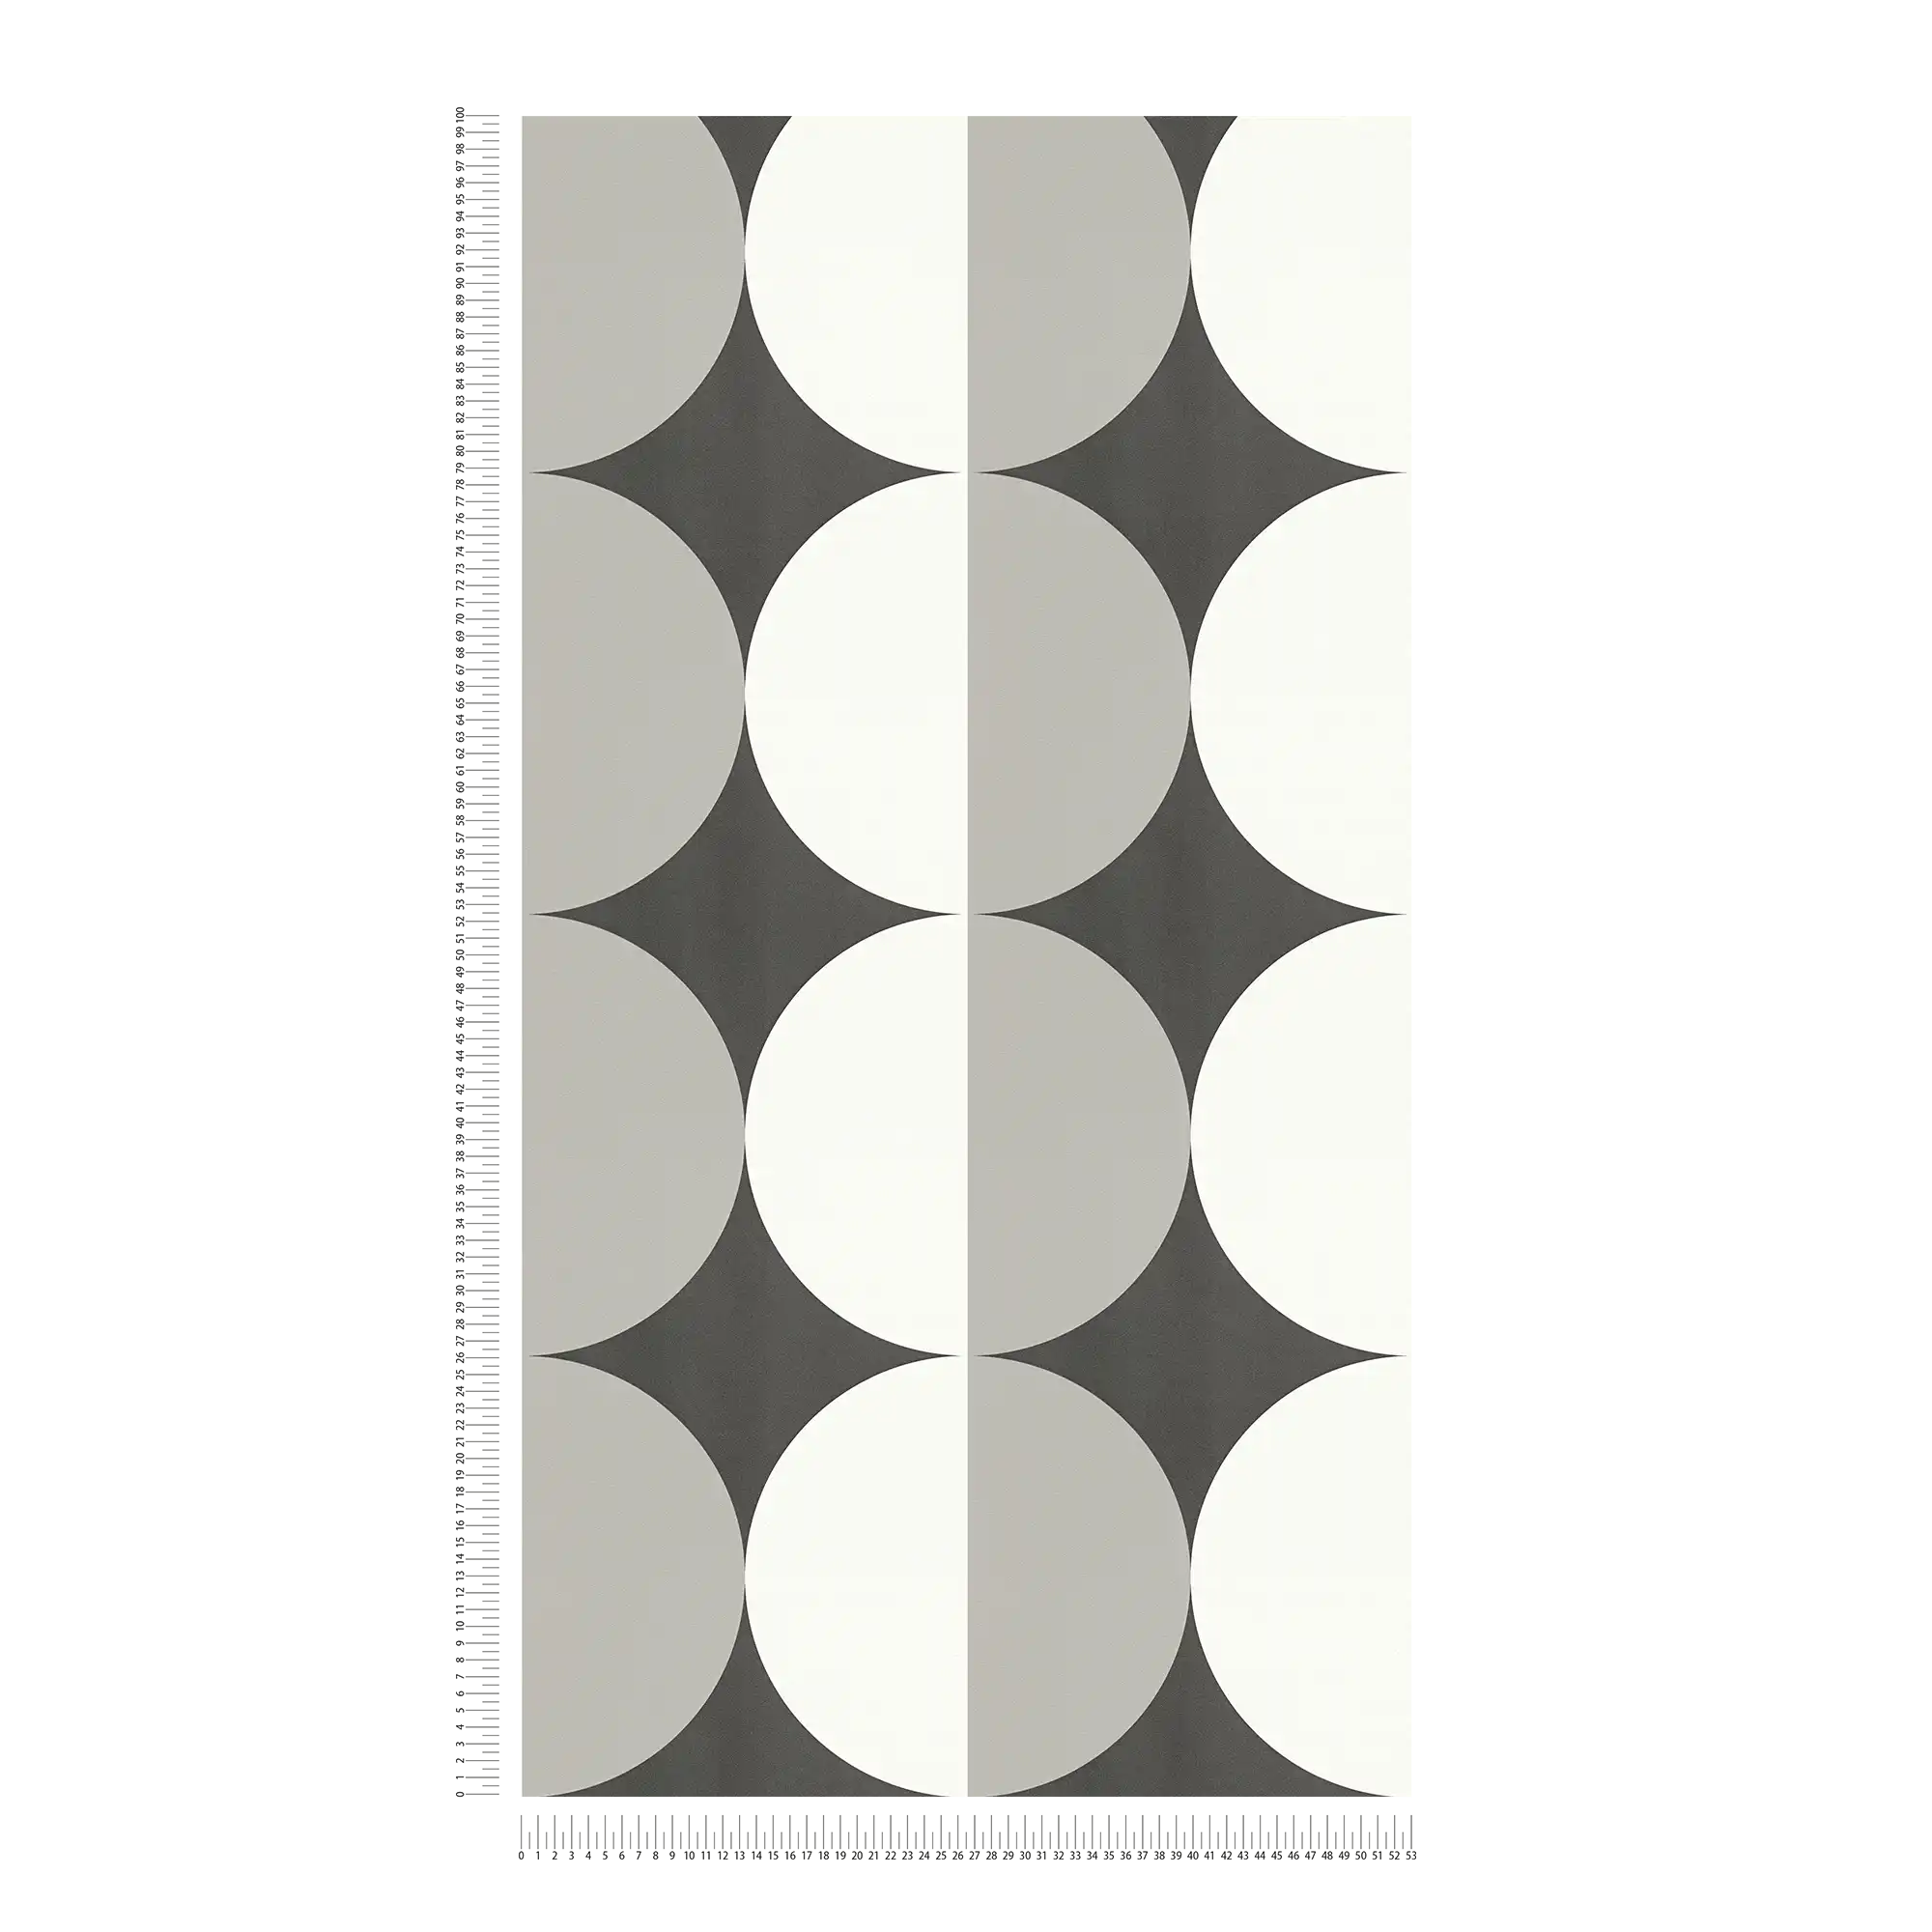             Retro vliesbehang met grafisch cirkelpatroon - zwart, wit, grijs
        